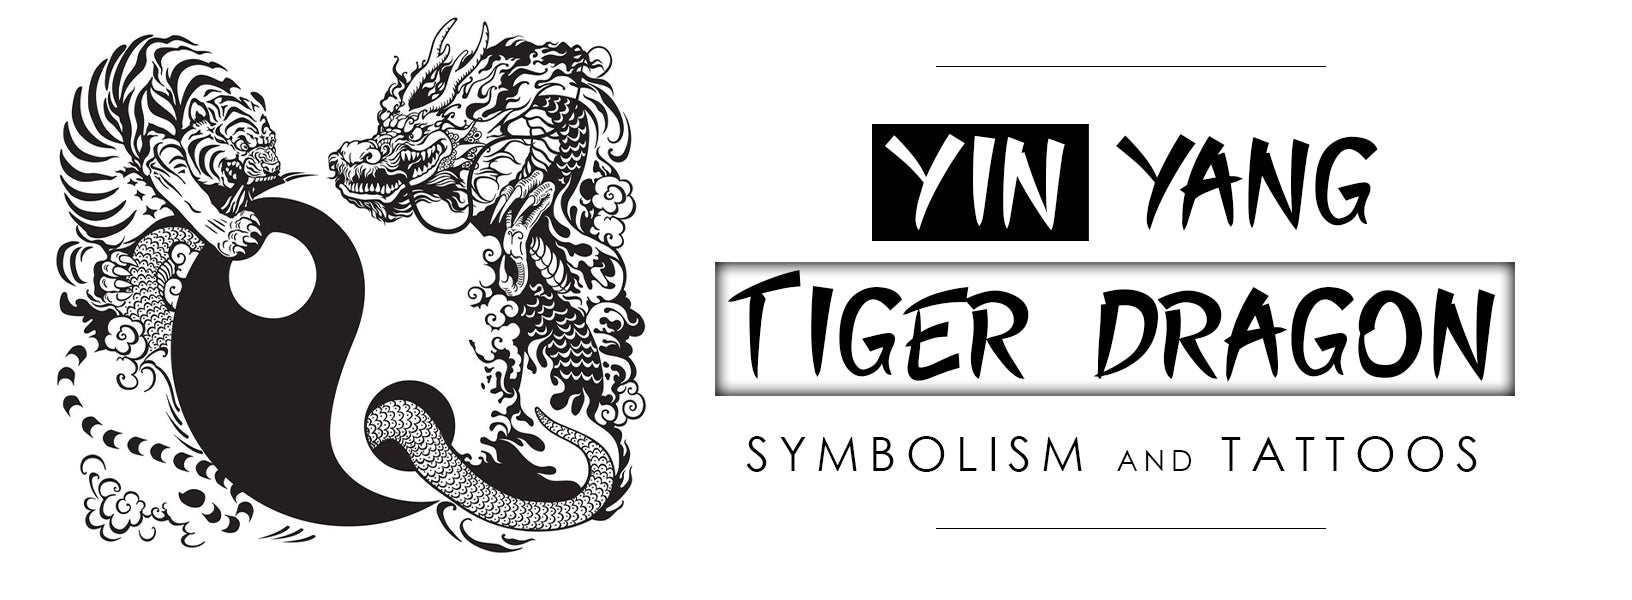 Yin Yang Tiger Dragon